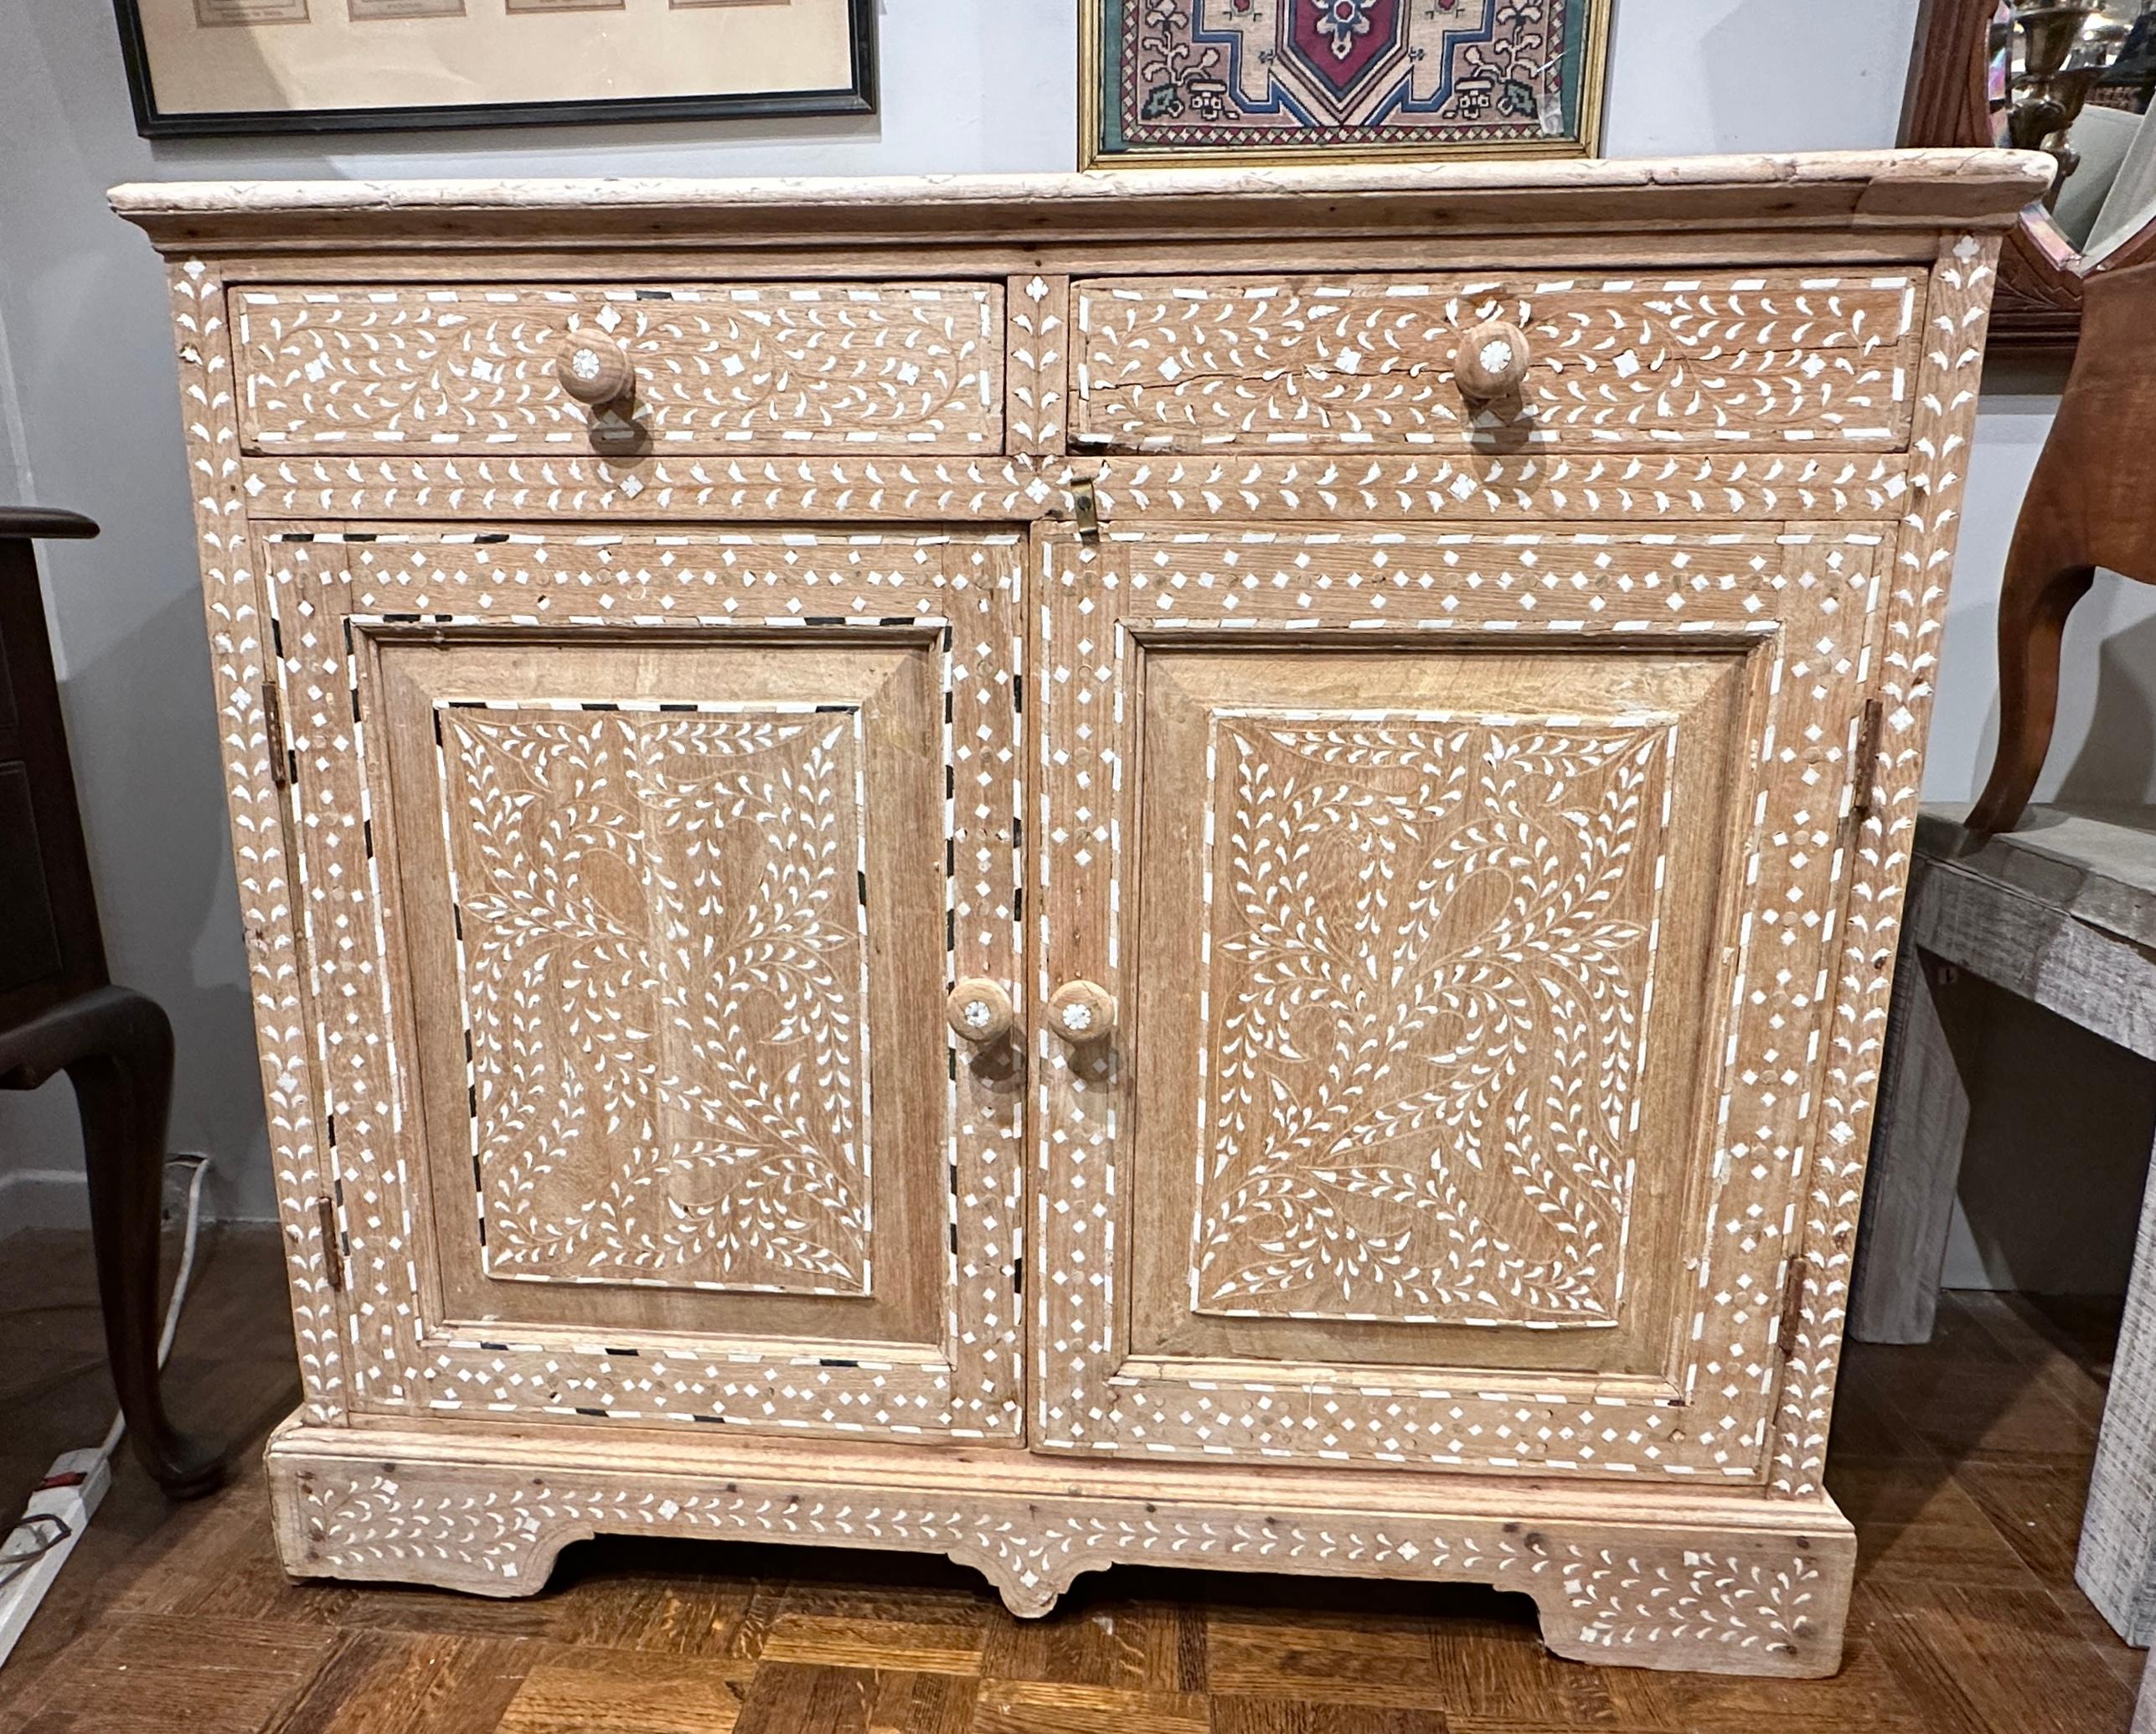 Circa late 19th Century, Moroccan bone inlay cabinet with two drawers and storage cabinet below.  Il est très décoratif, avec des incrustations florales en os,  Le bois de teck blanchi donne un aspect très rustique.